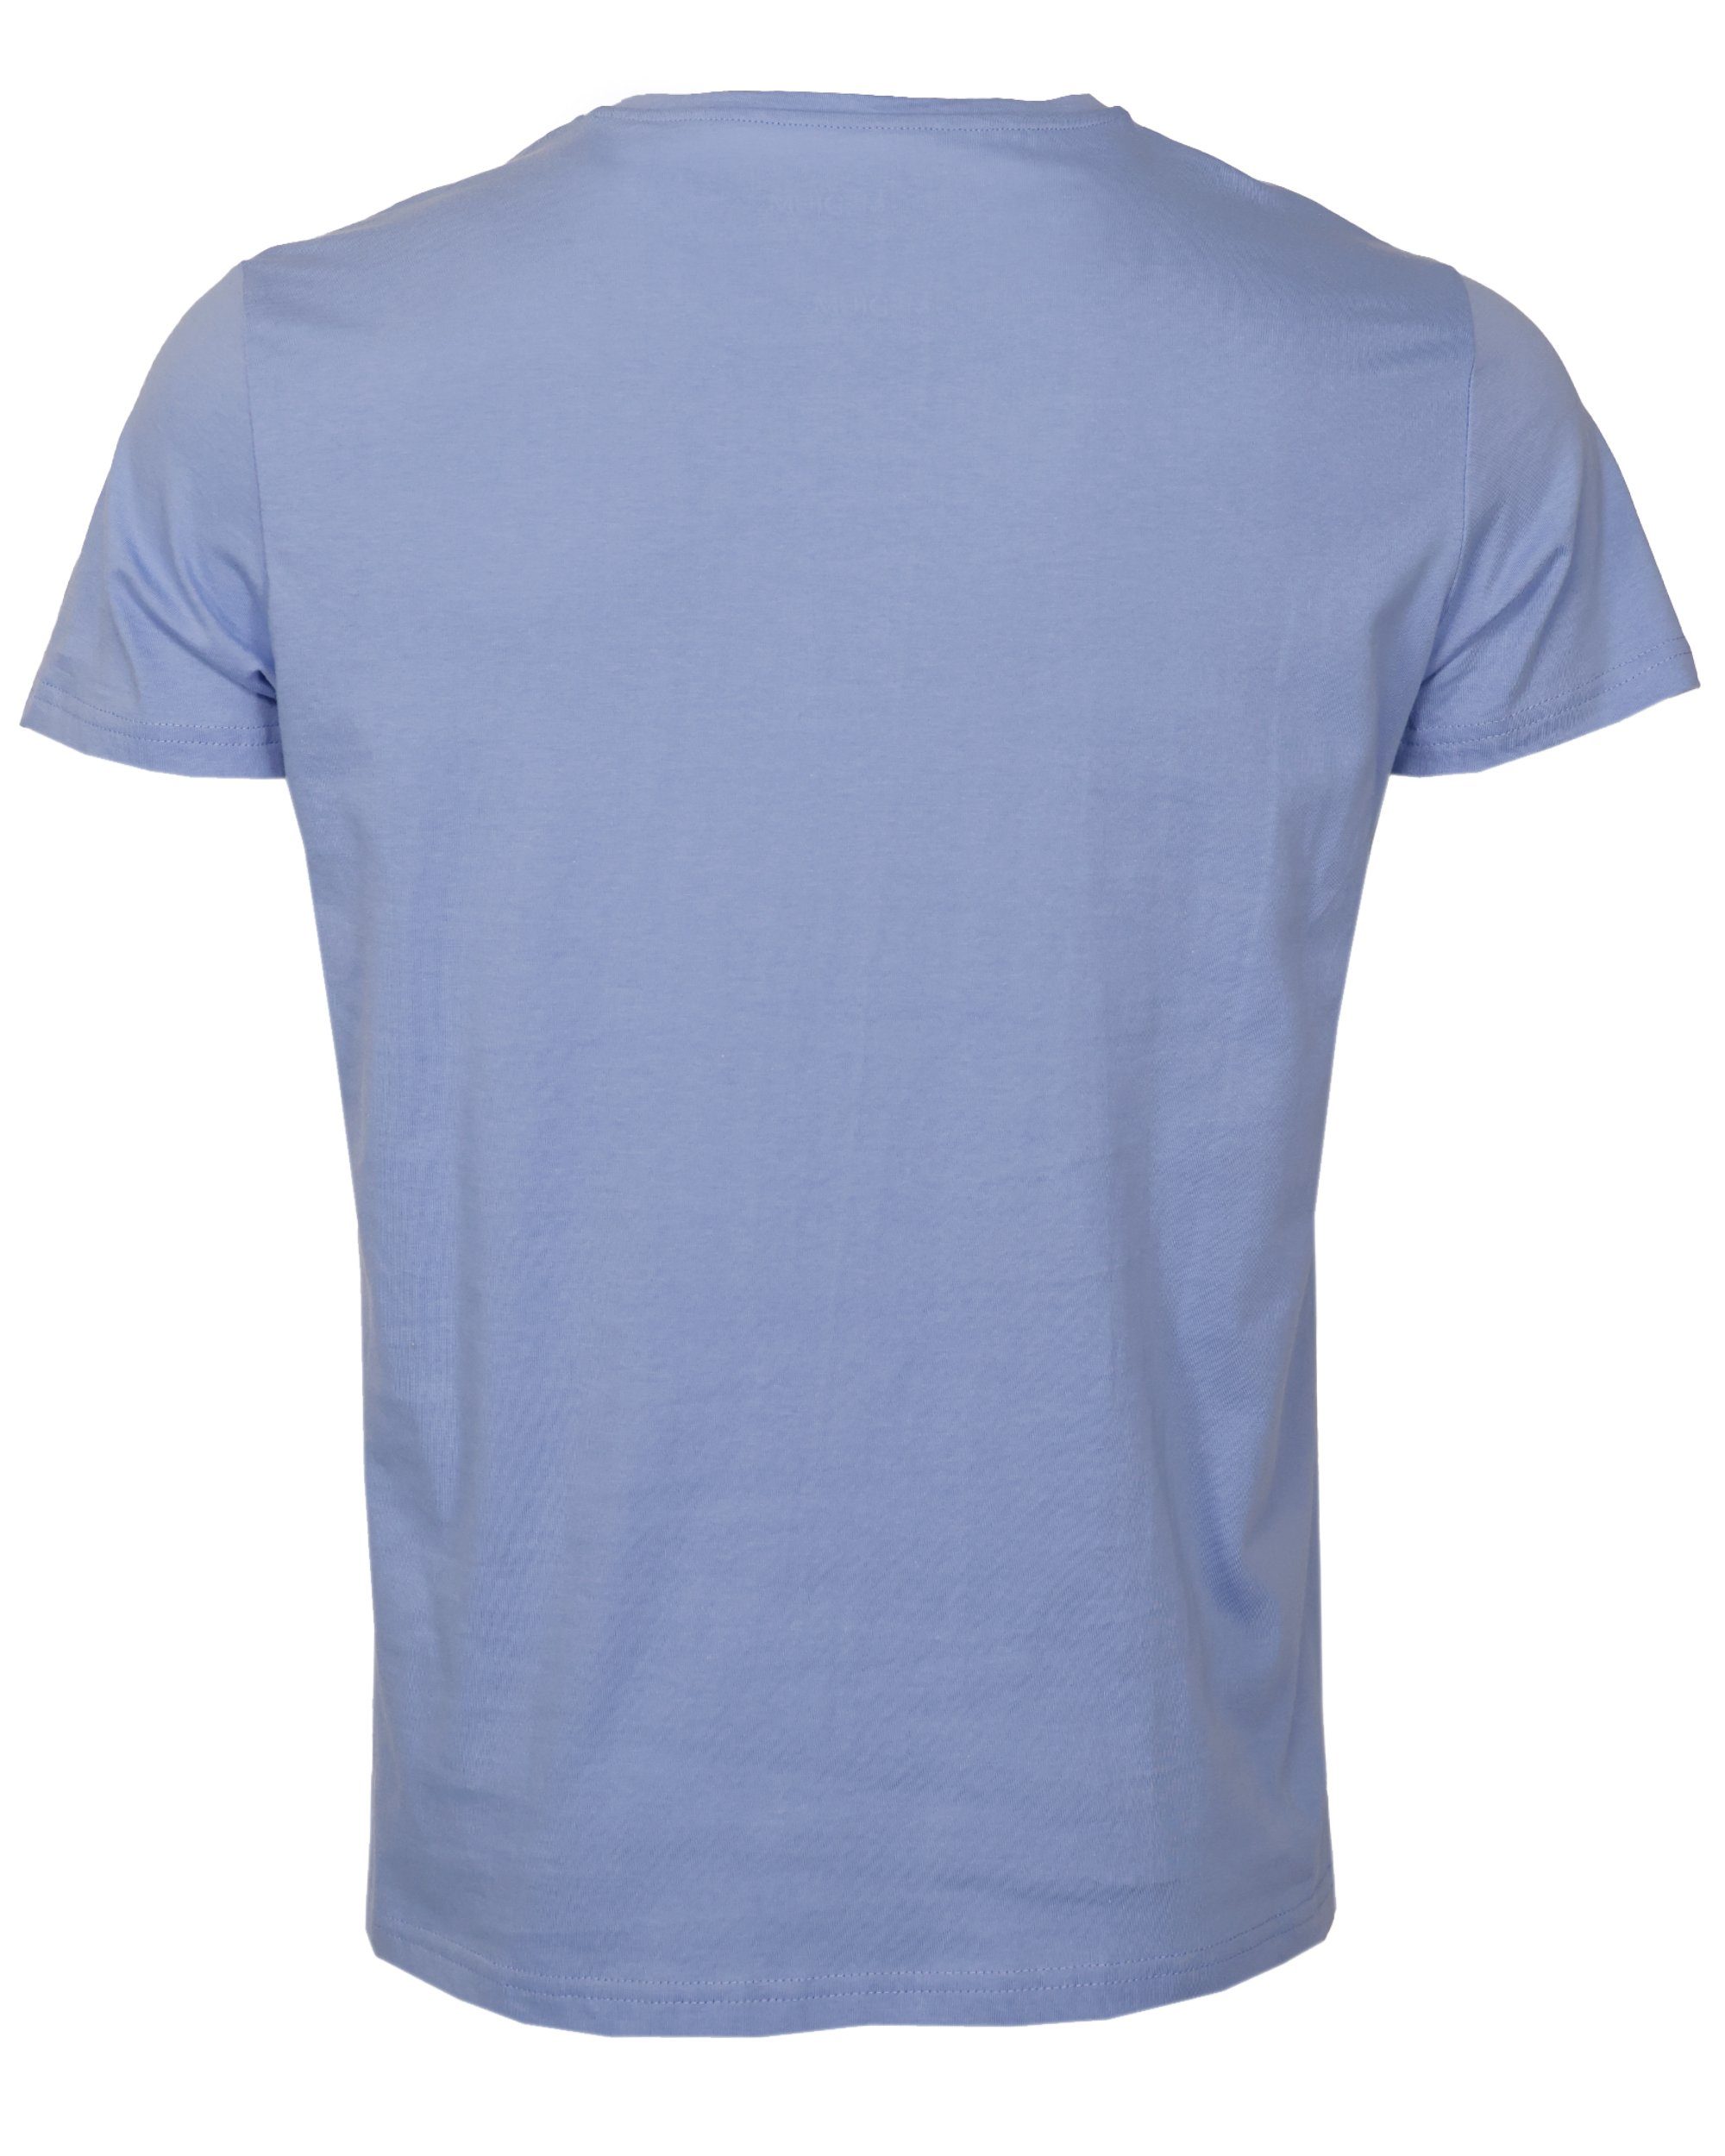 TOP GUN T-Shirt TG20213036 blue light